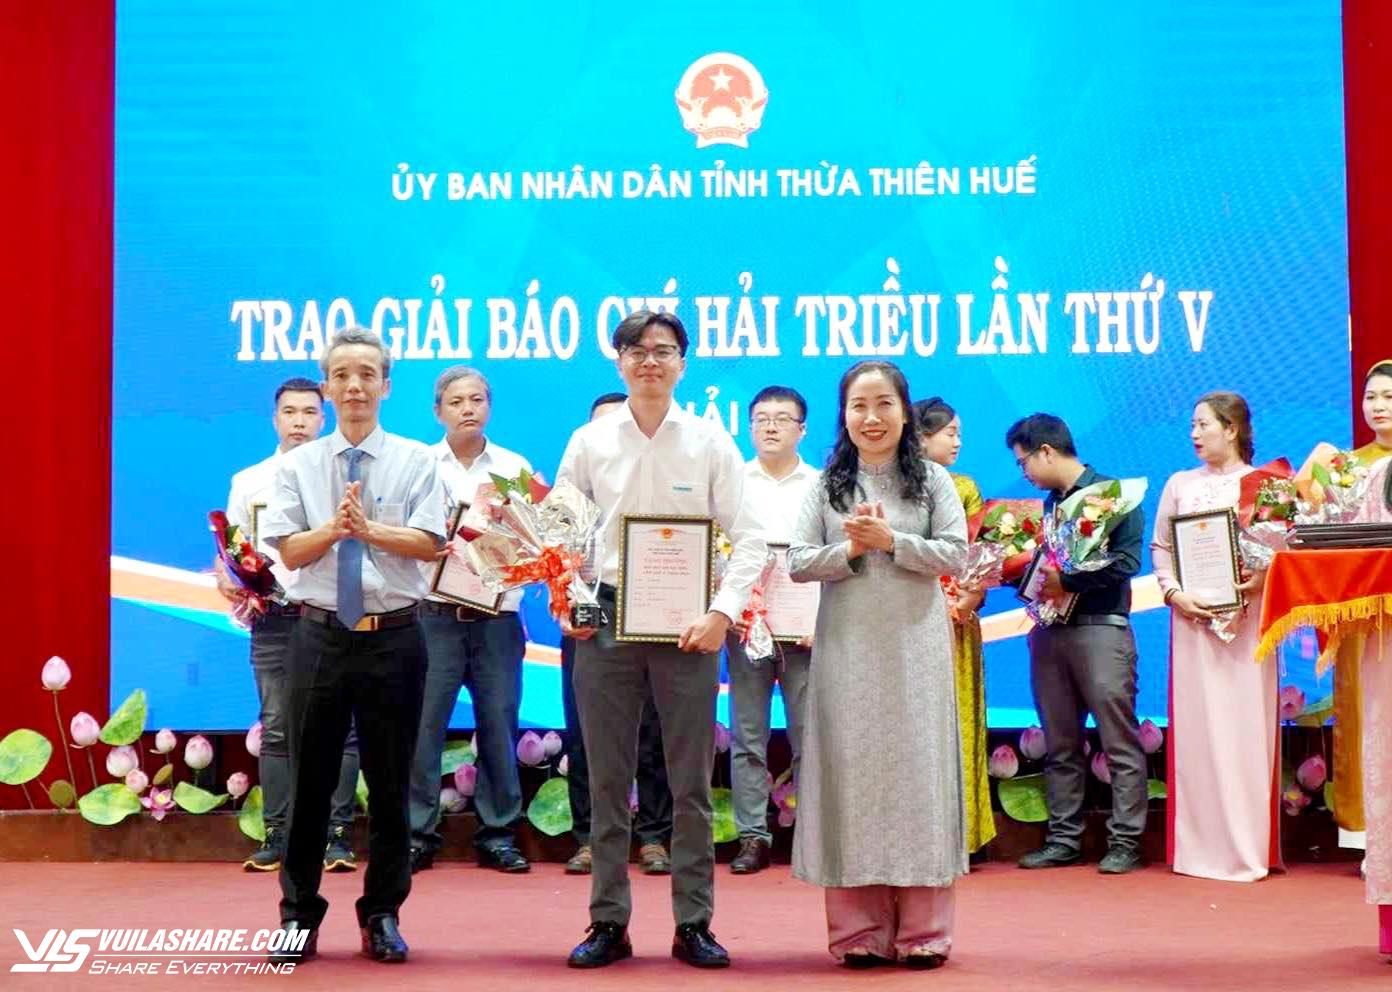 Hai nhà báo của Báo Thanh Niên nhận Giải báo chí Hải Triều lần thứ 5- Ảnh 2.